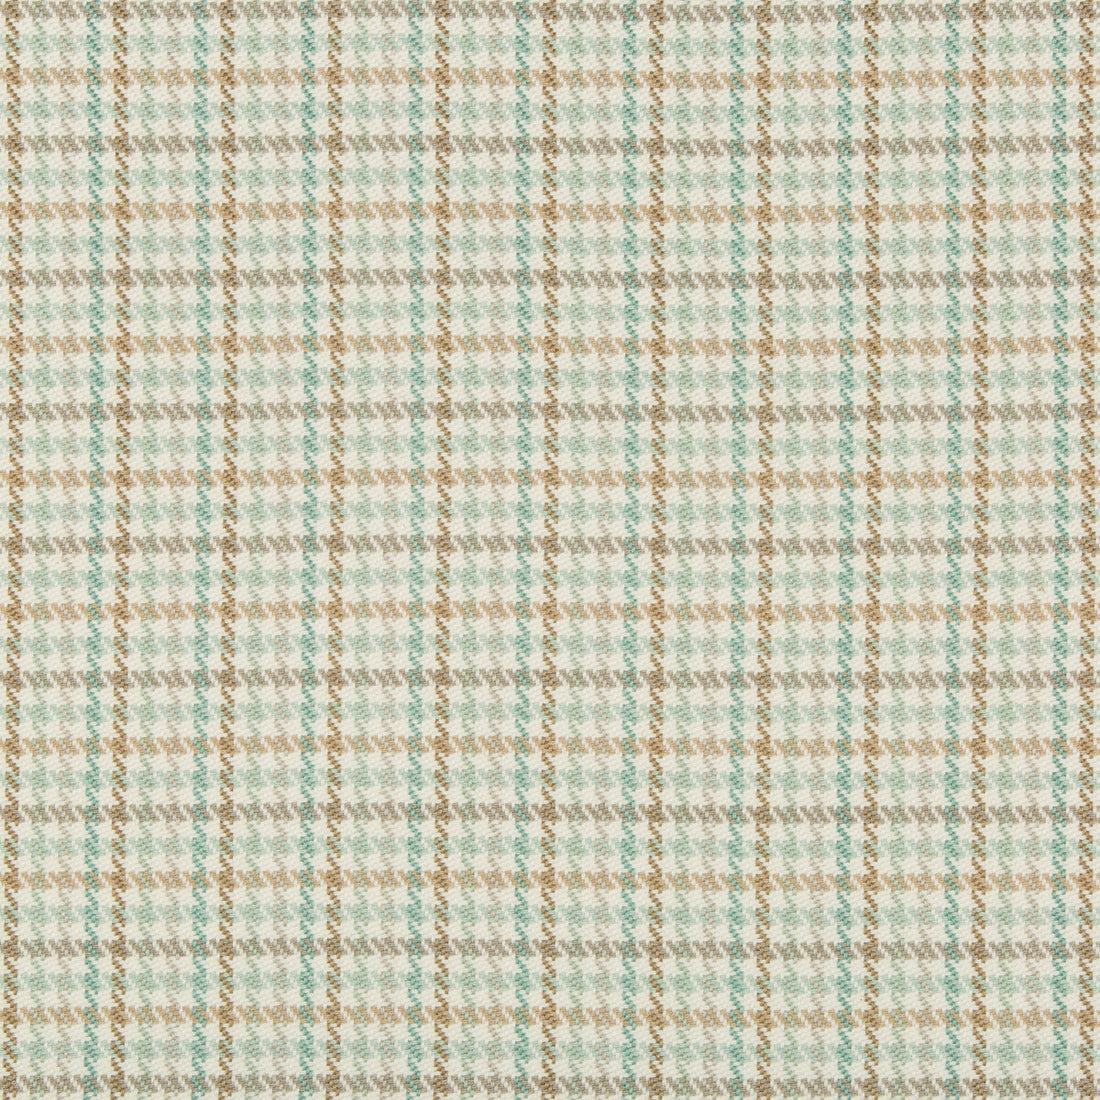 Kravet Basics fabric in 35269-615 color - pattern 35269.615.0 - by Kravet Basics